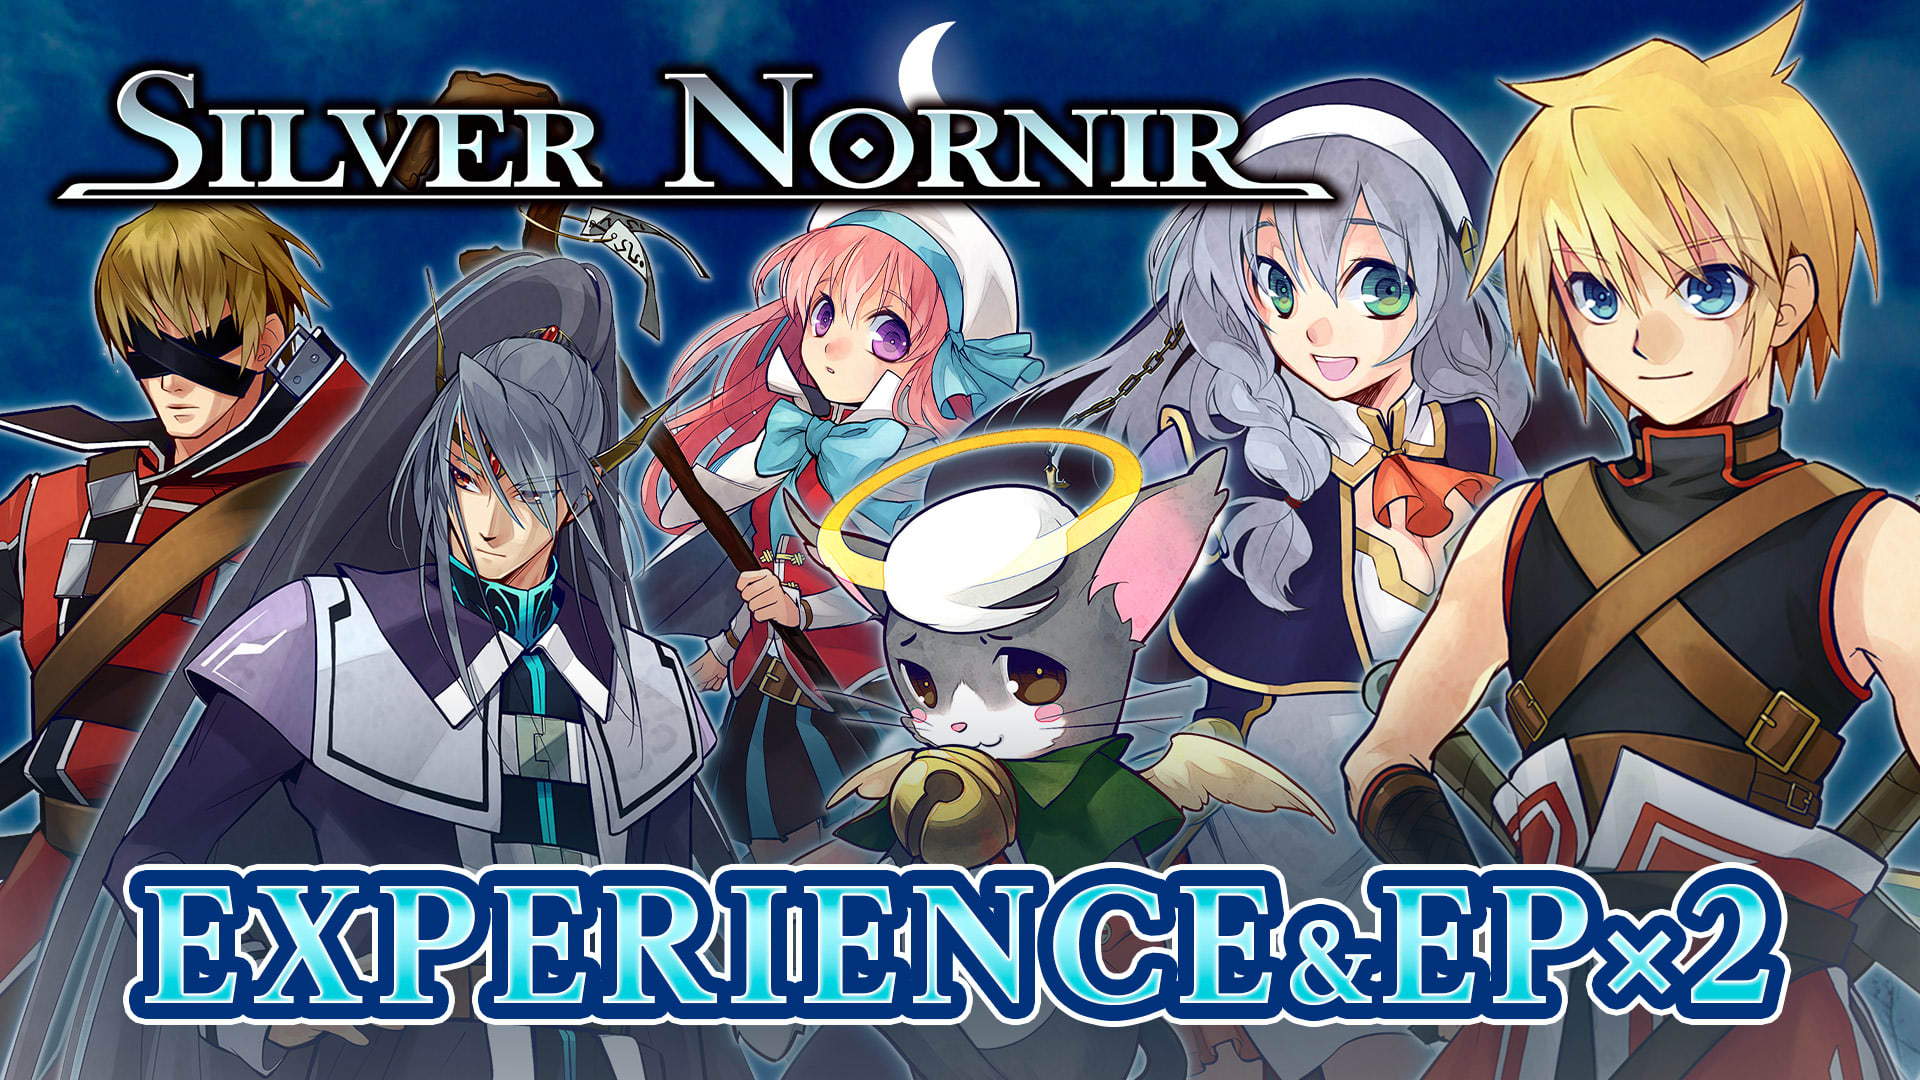 Experience & EP x2 - Silver Nornir